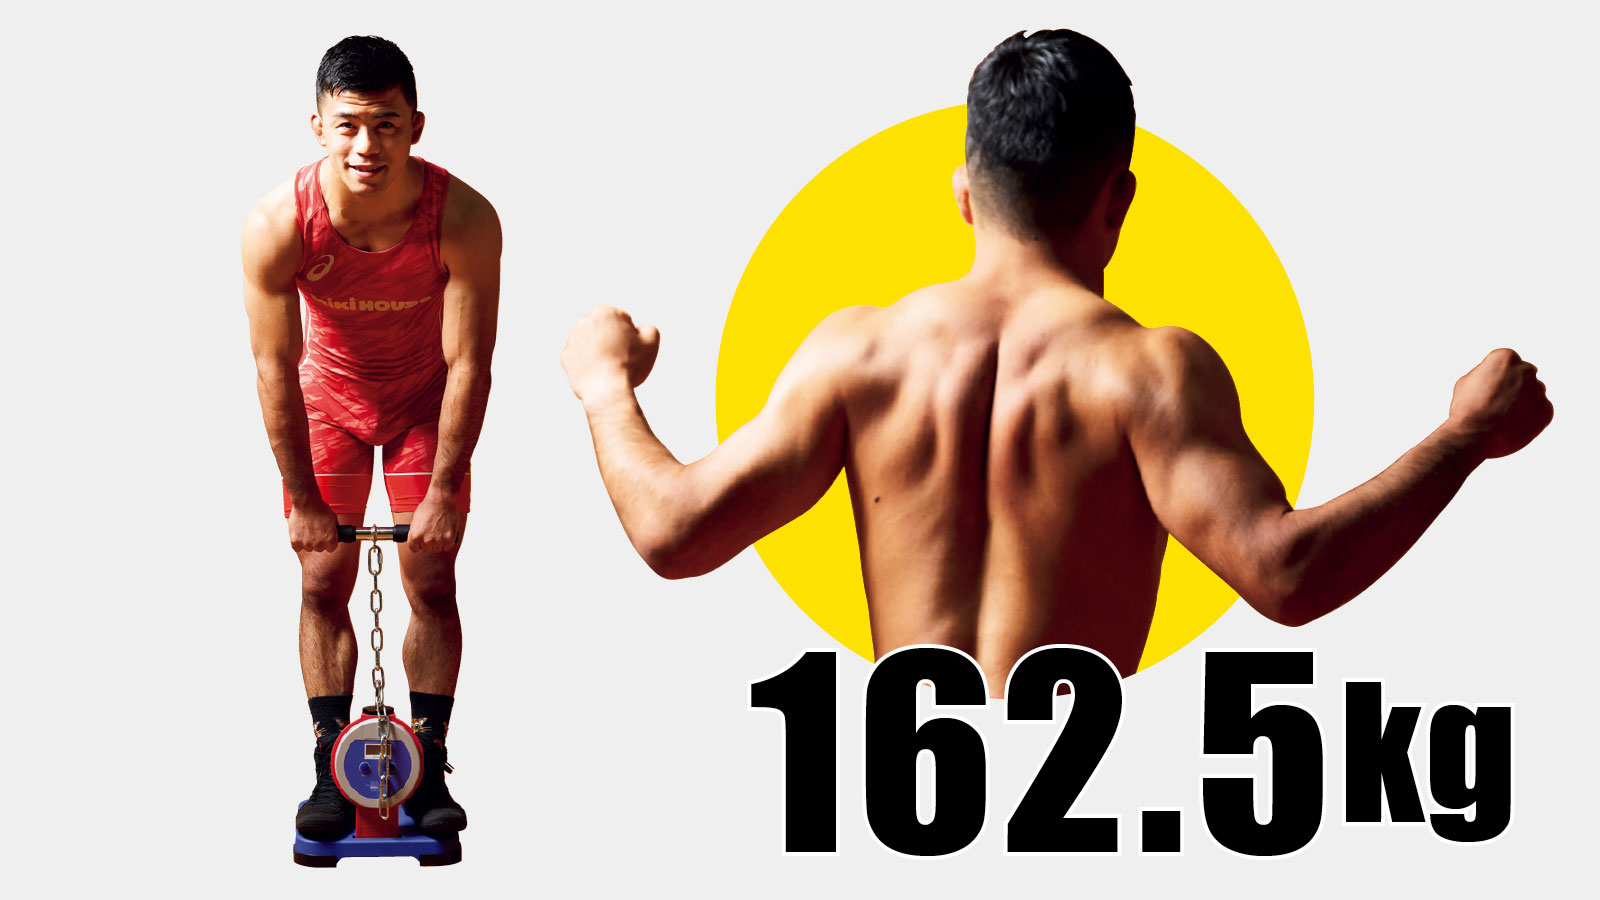 文田健一郎（レスリング選手／ミキハウス） 結果162.5kg